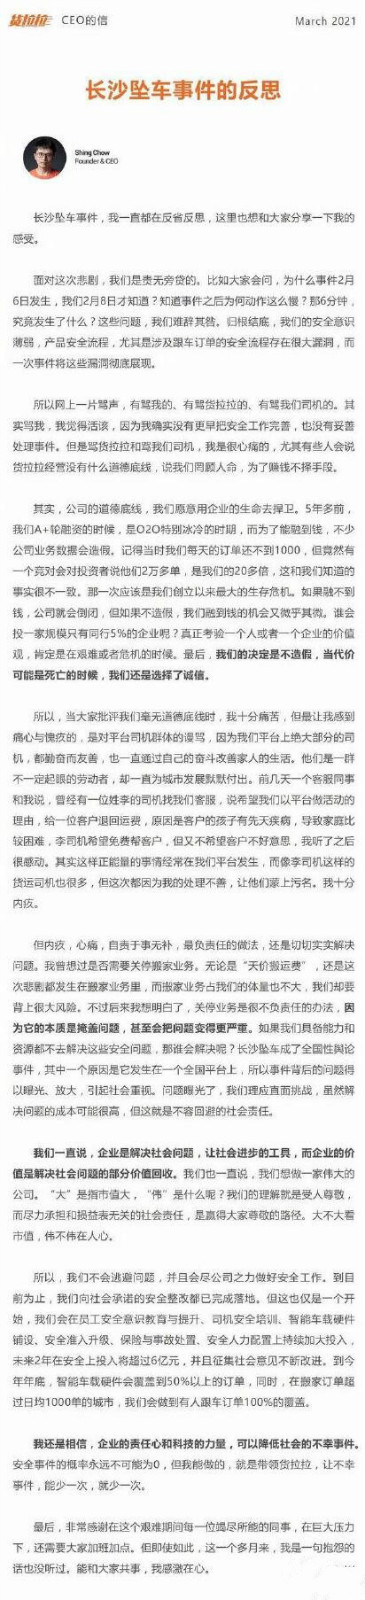 货拉拉推出7项安全功能-货拉拉CEO发长沙事件道歉信 2